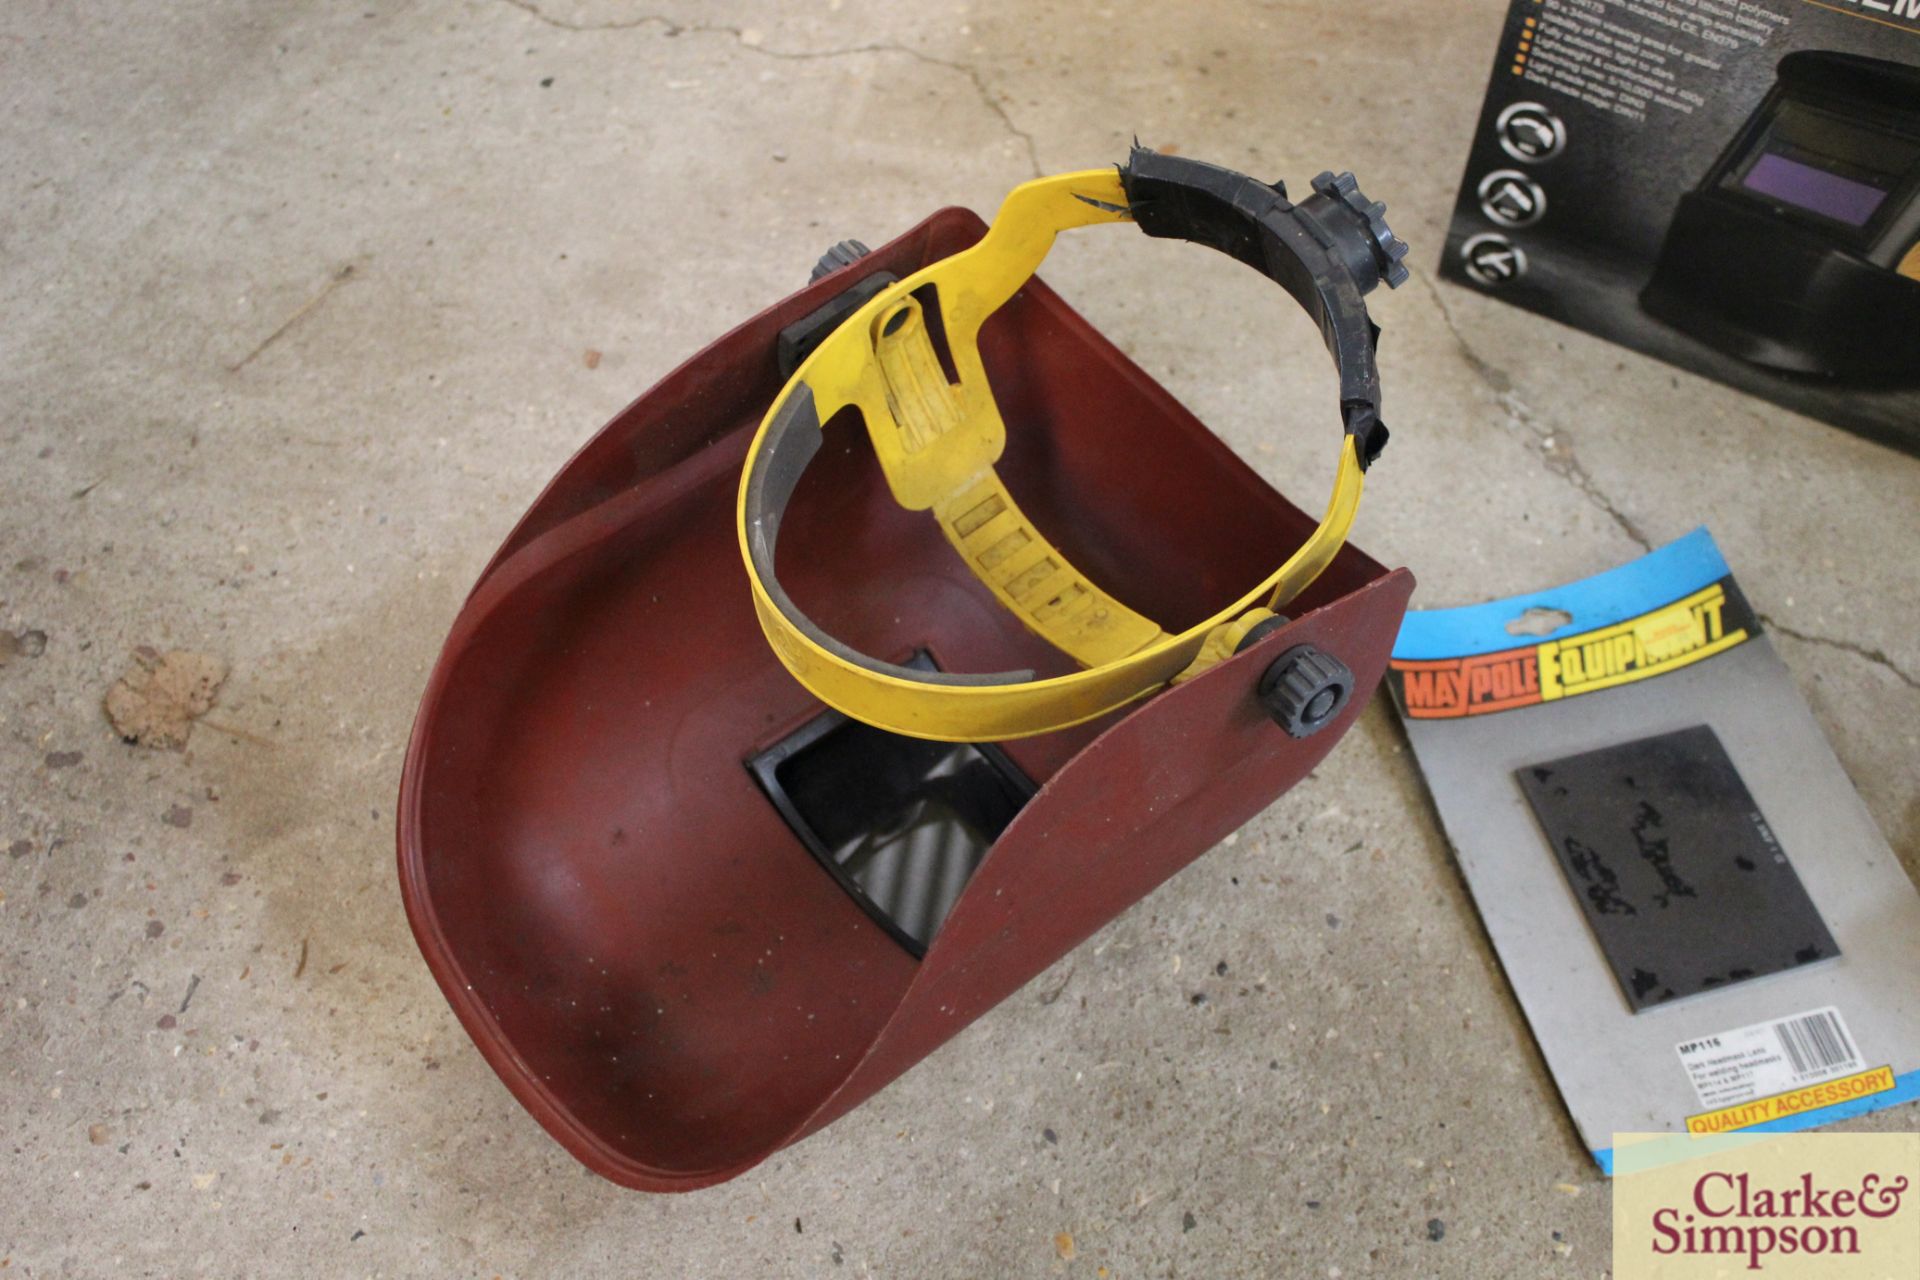 Auto darkening welding helmet and another. - Image 2 of 3